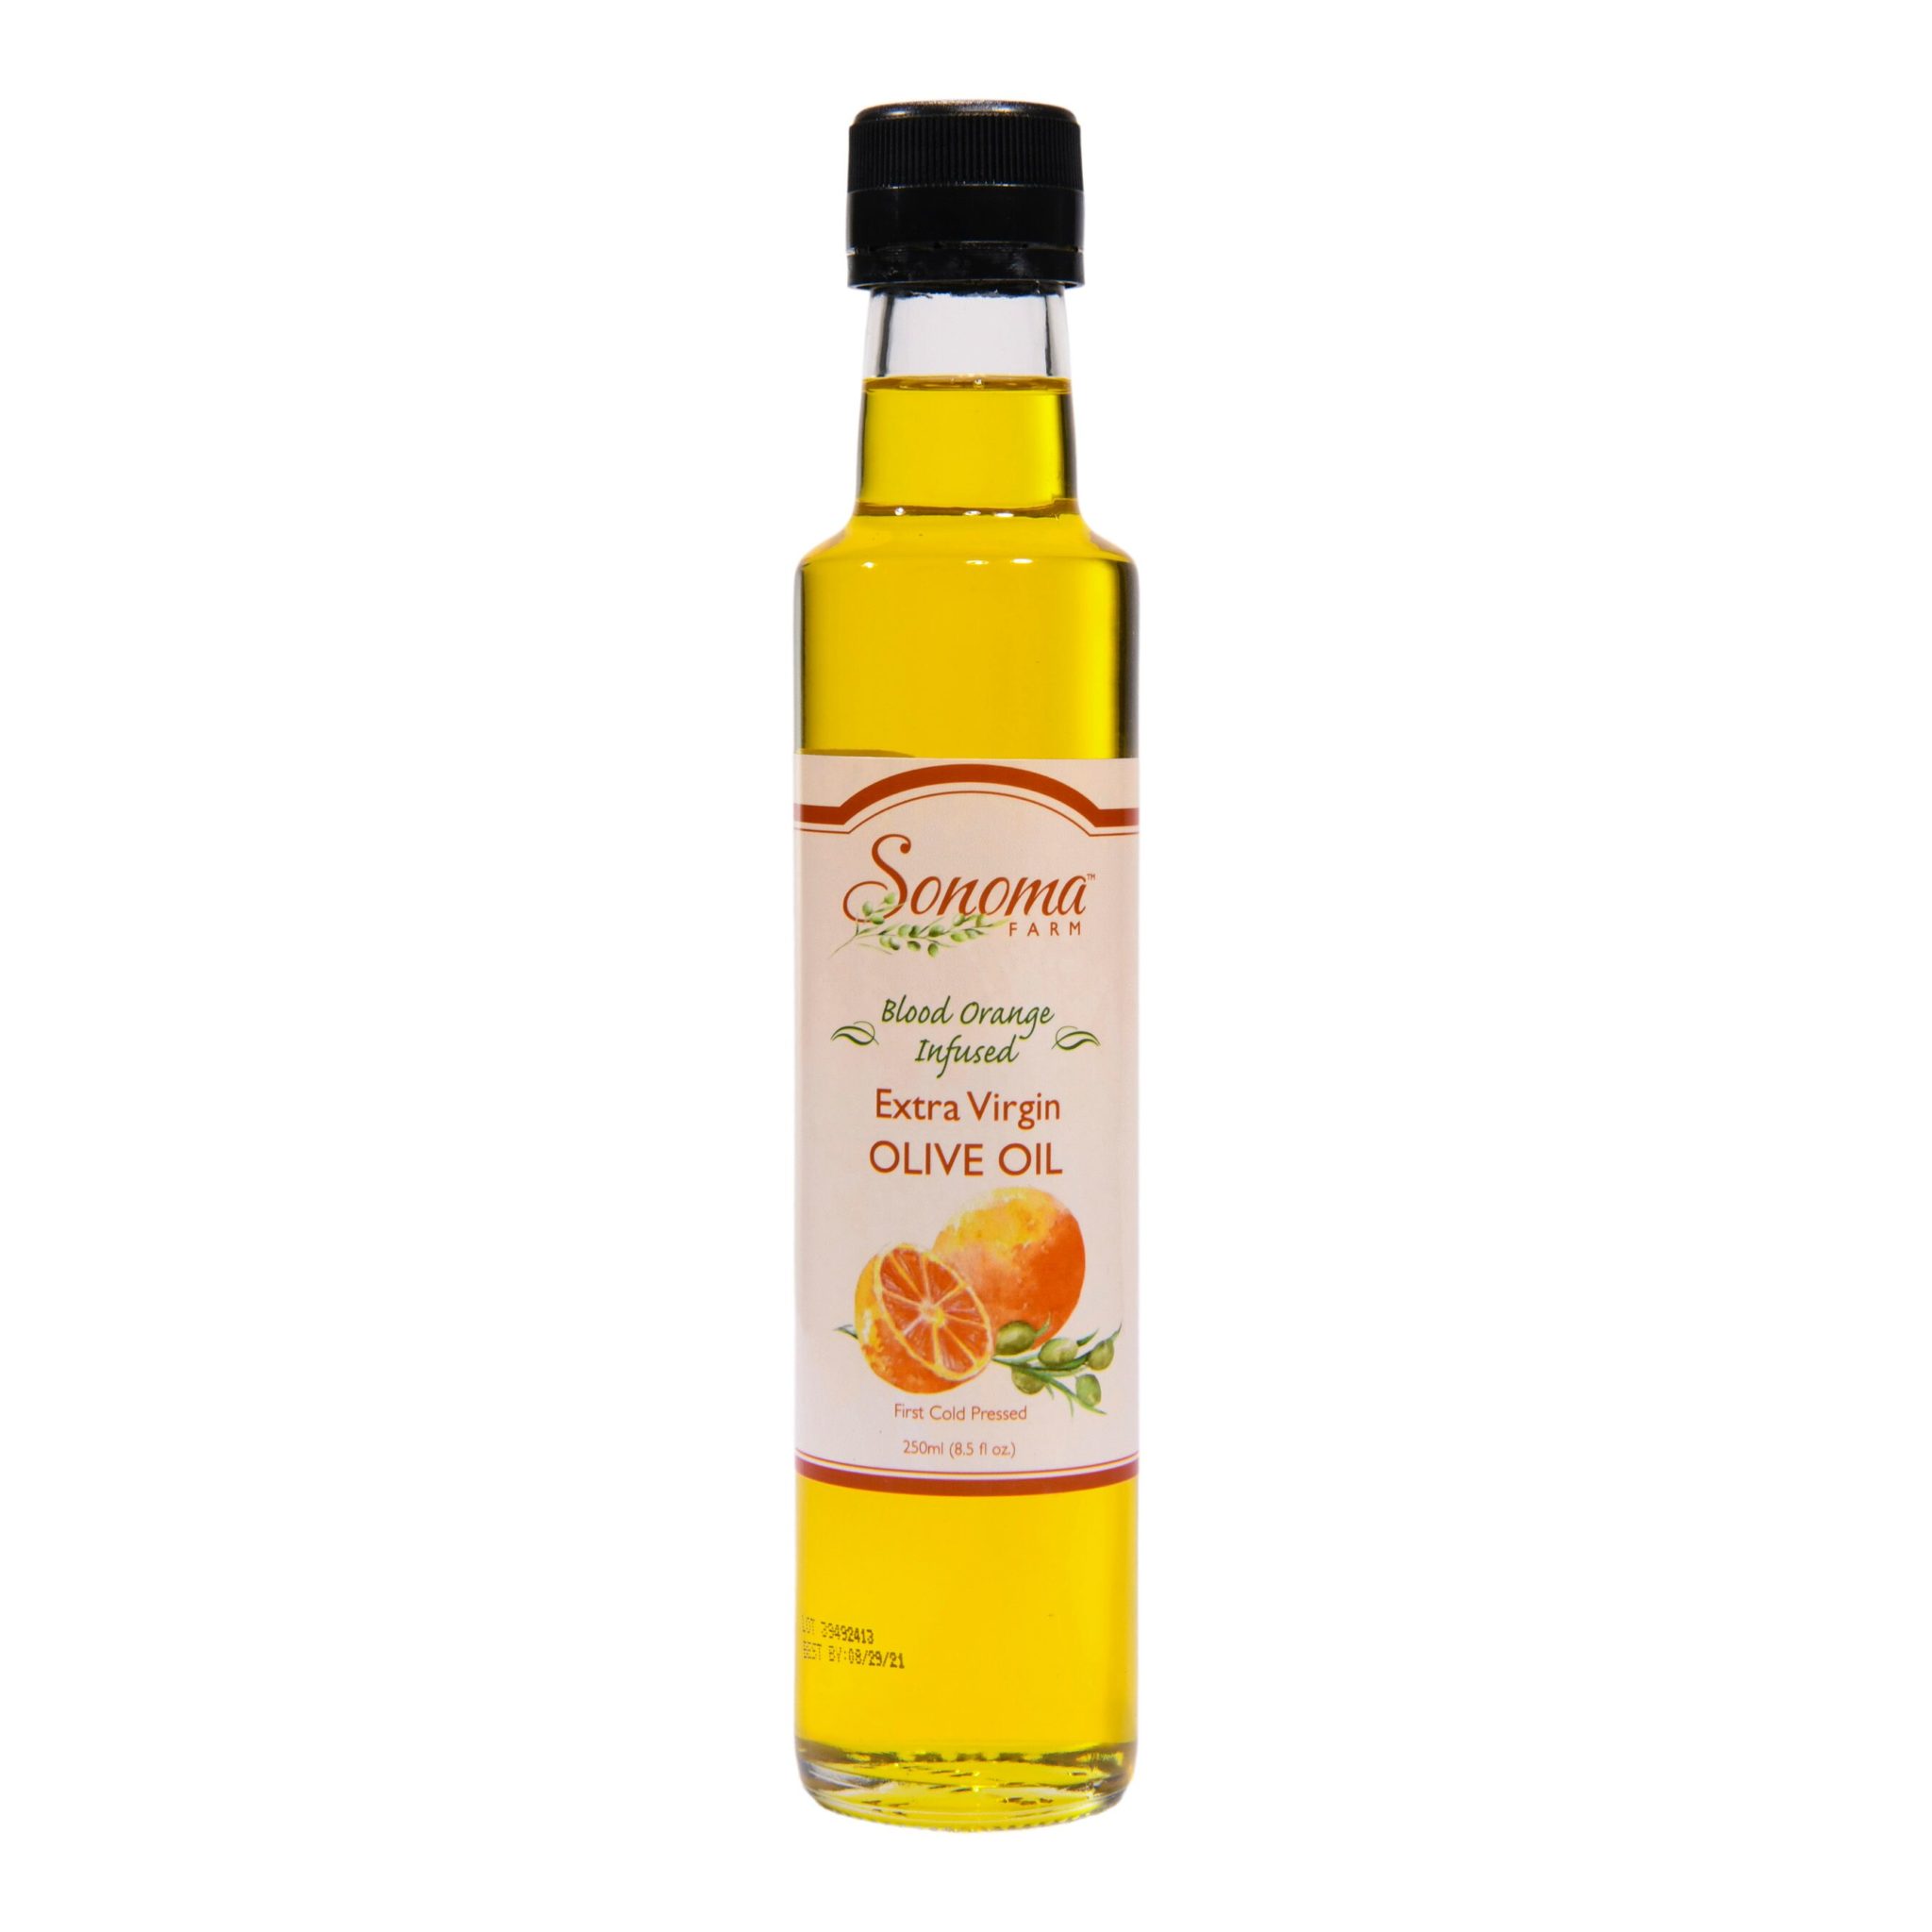 blood-orange-olive-oil-25ml-8.5oz-sonoma-farm-1